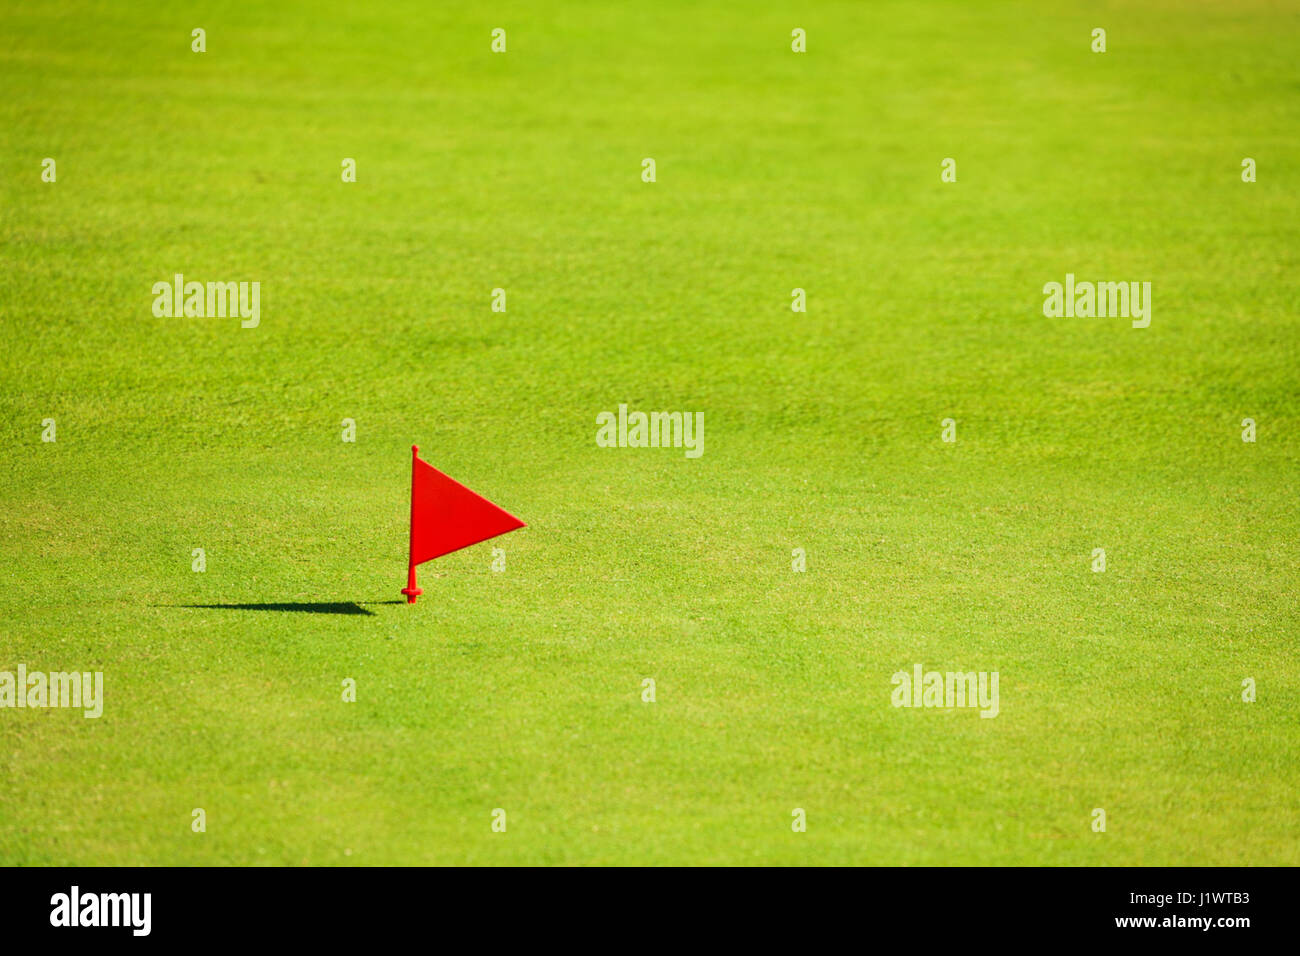 Putting green con bandiera rossa marcatore alla fine del fairway sul campo da golf Foto Stock